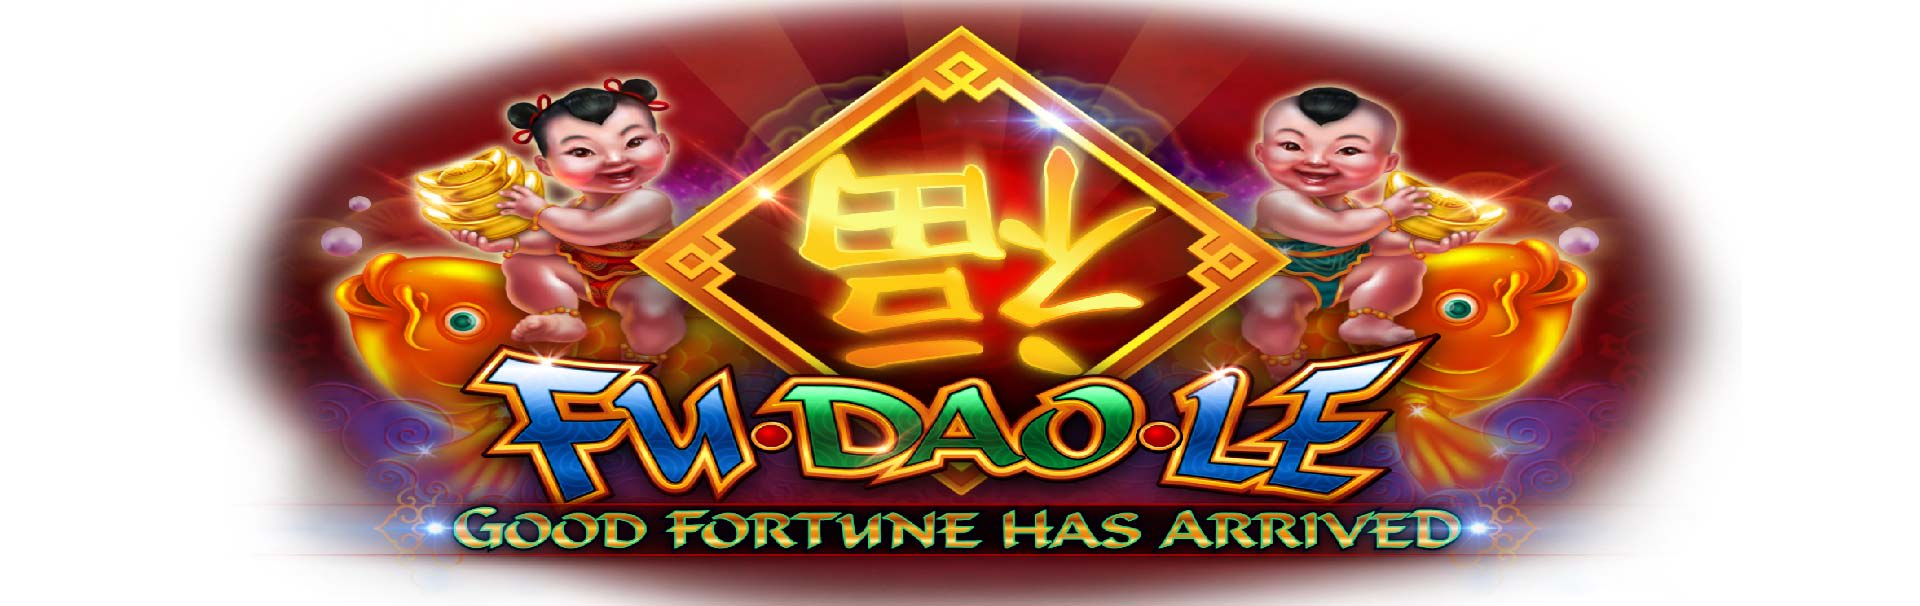 Fu Dao Le Free Slot Machine